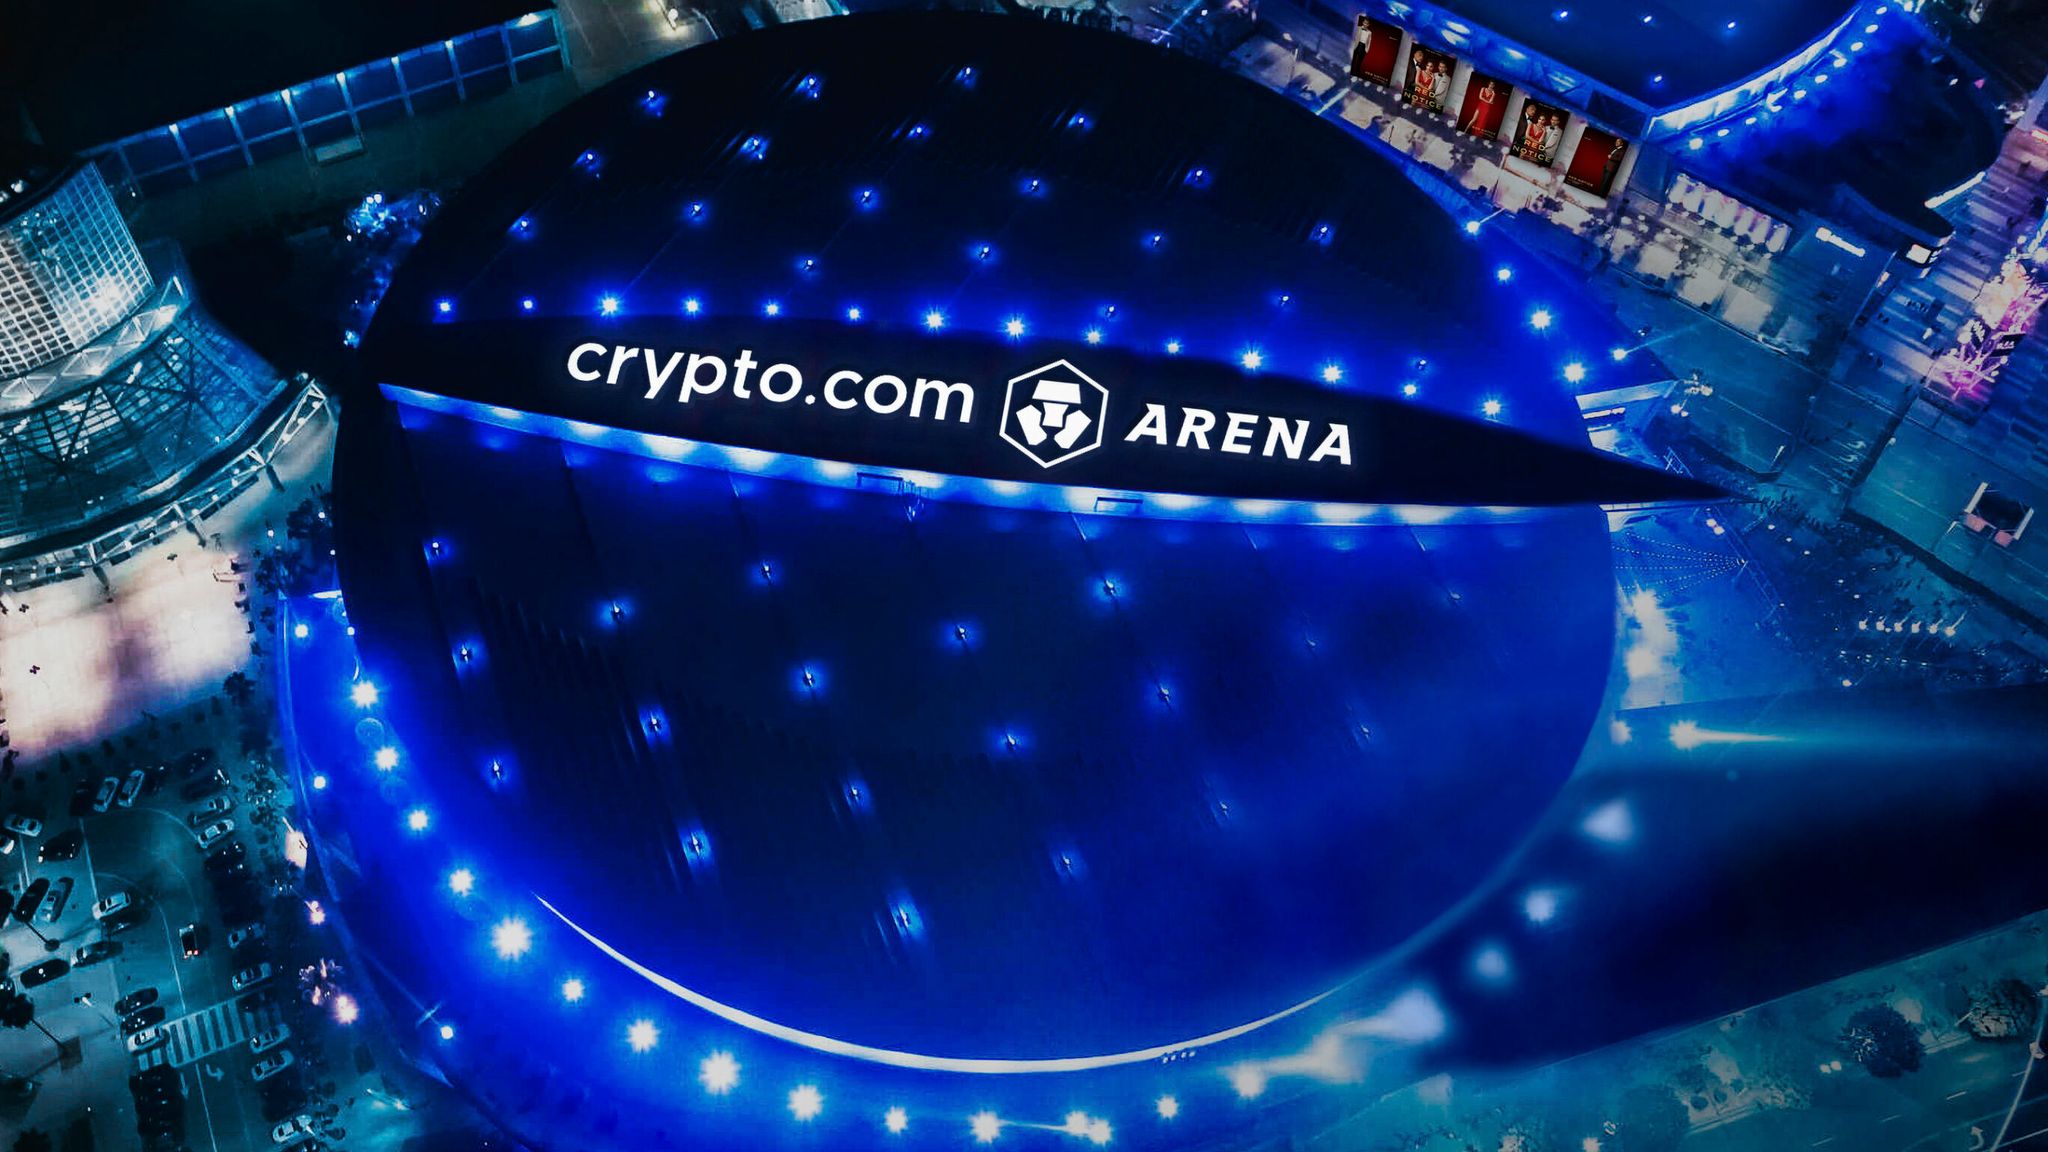 crypto.com arena event today